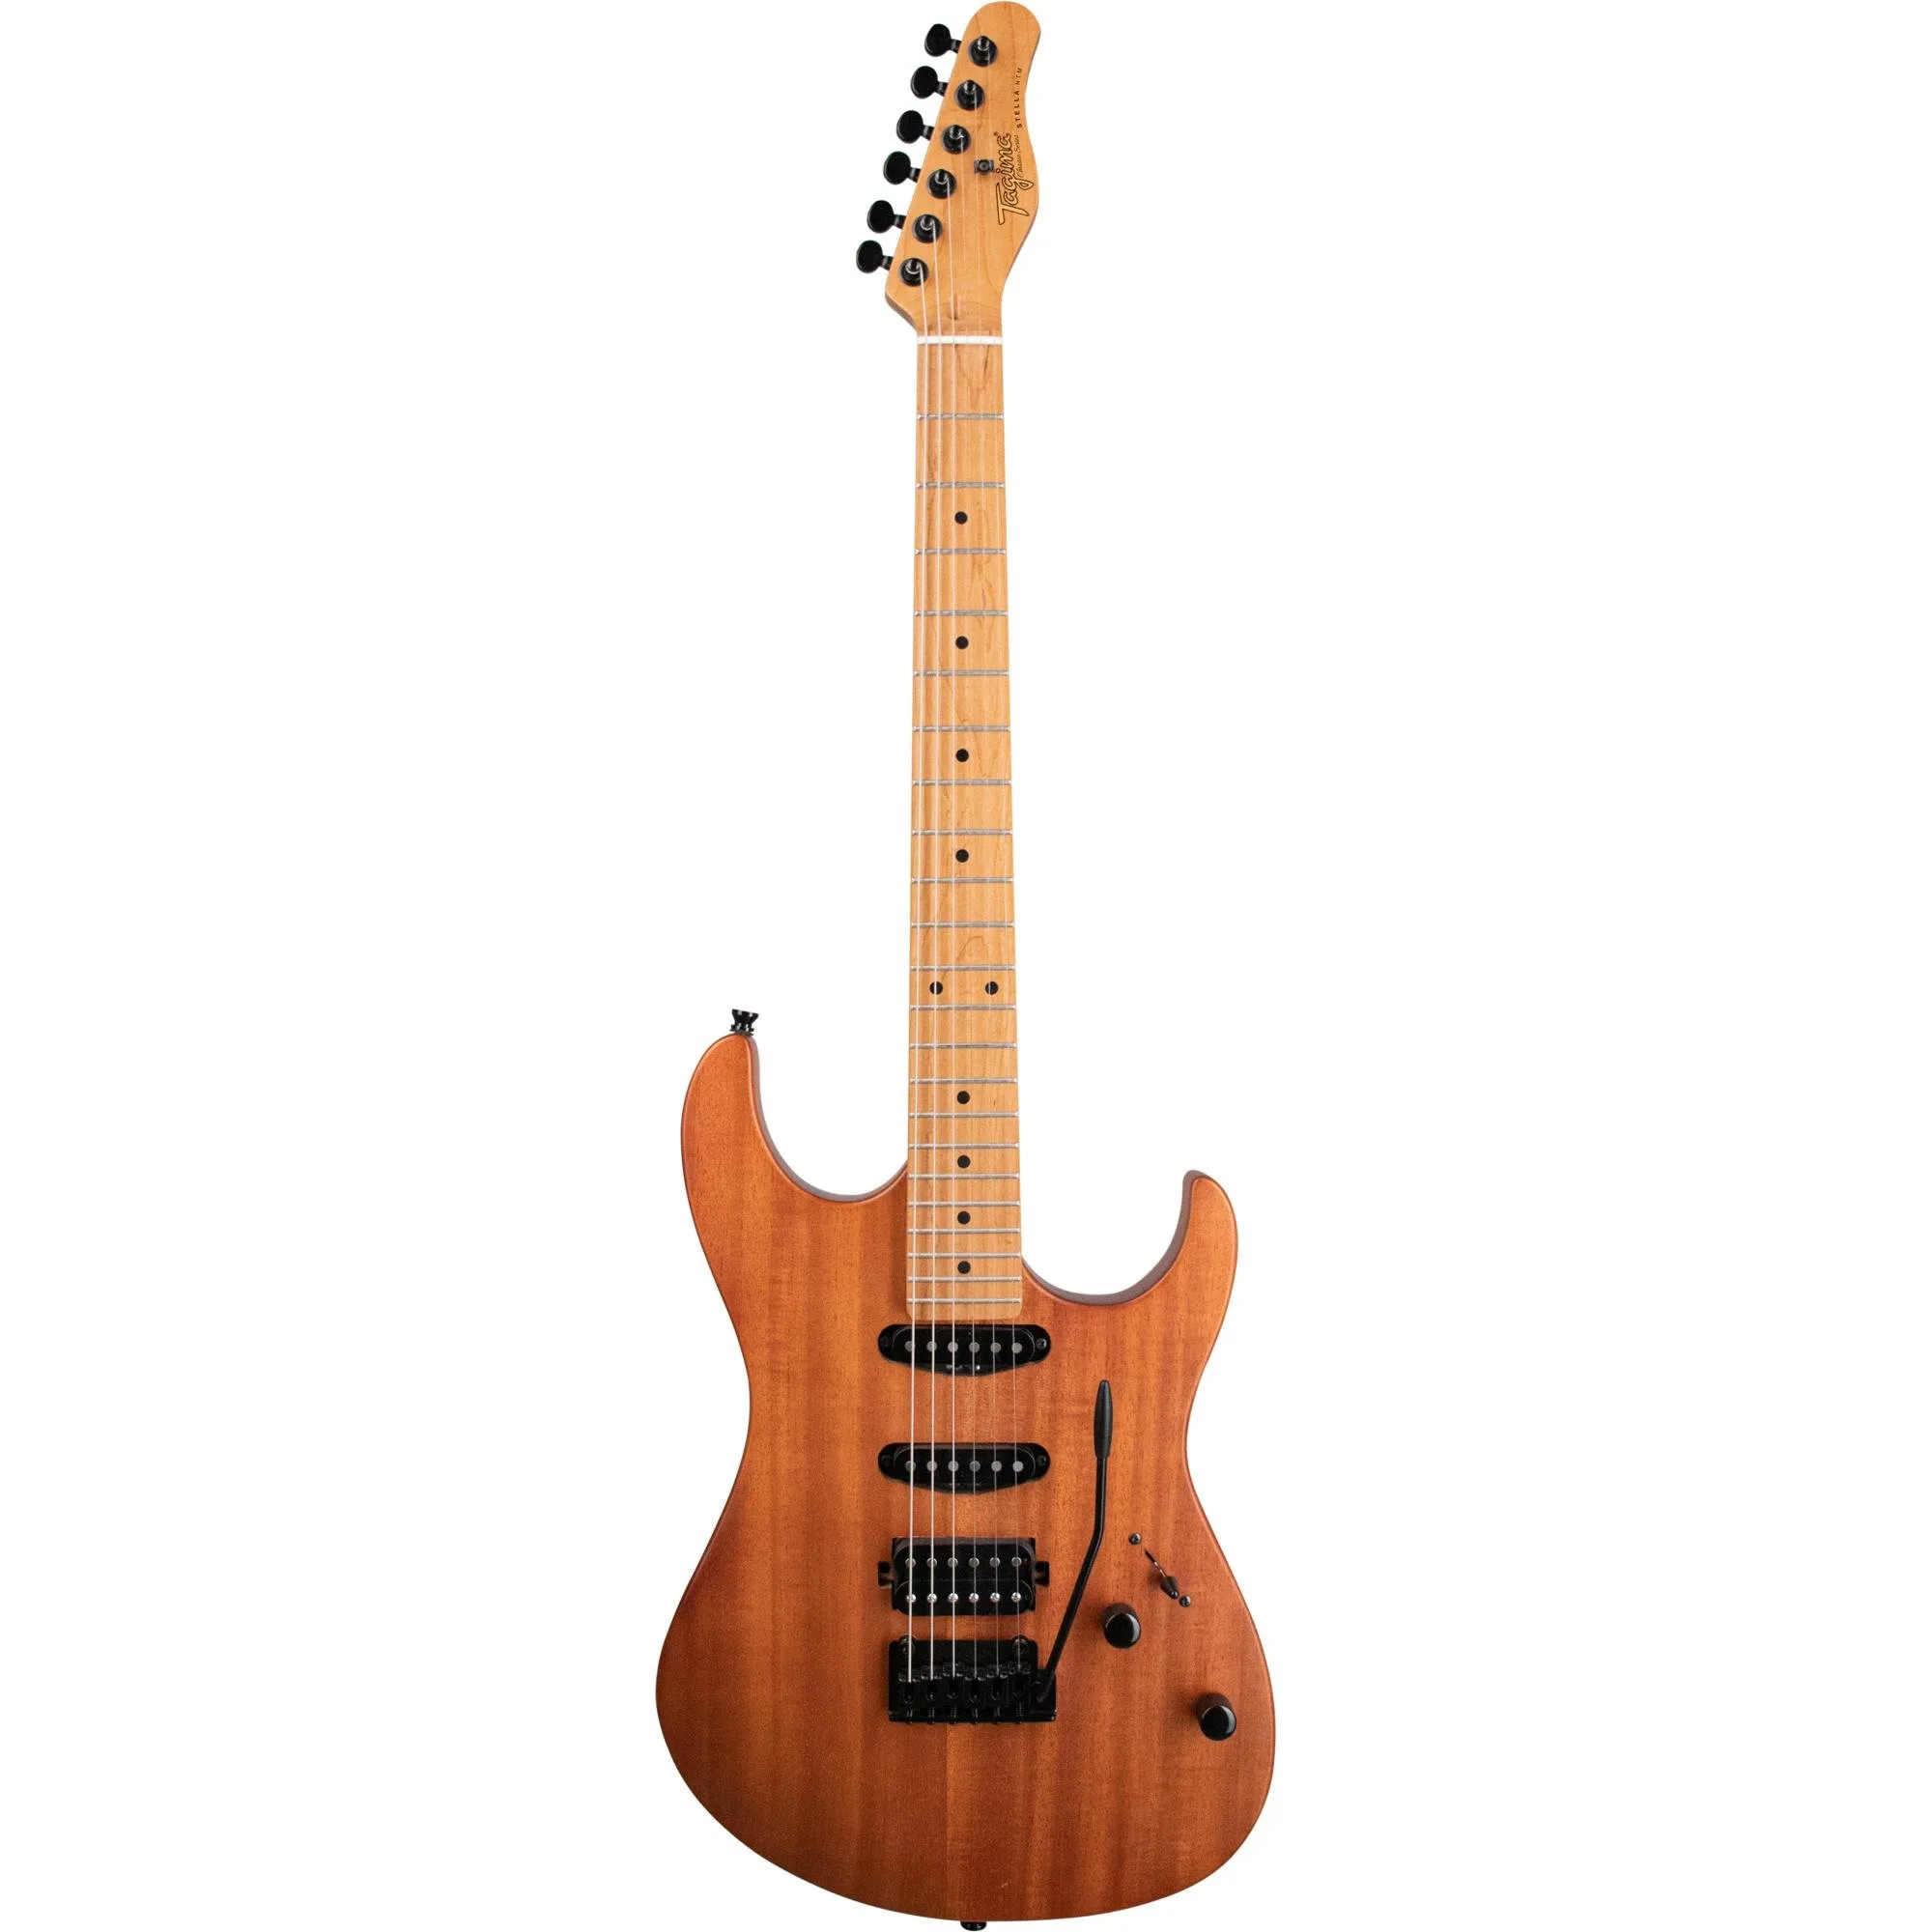 Guitarra Tagima Stella NTM NTS/LF Natural Satin por 2.524,99 à vista no boleto/pix ou parcele em até 12x sem juros. Compre na loja Mundomax!